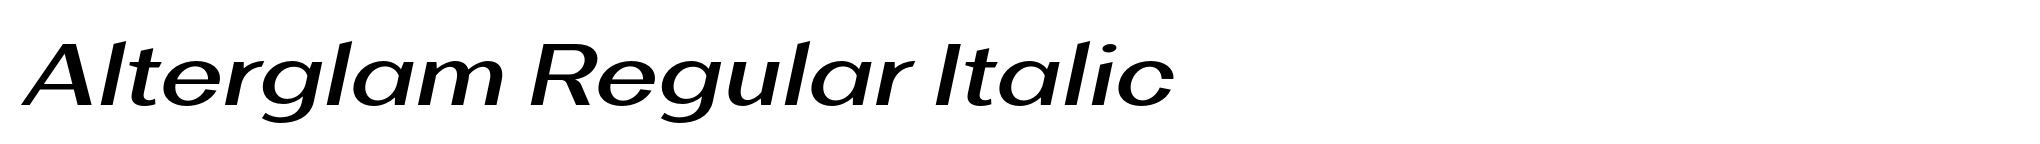 Alterglam Regular Italic image